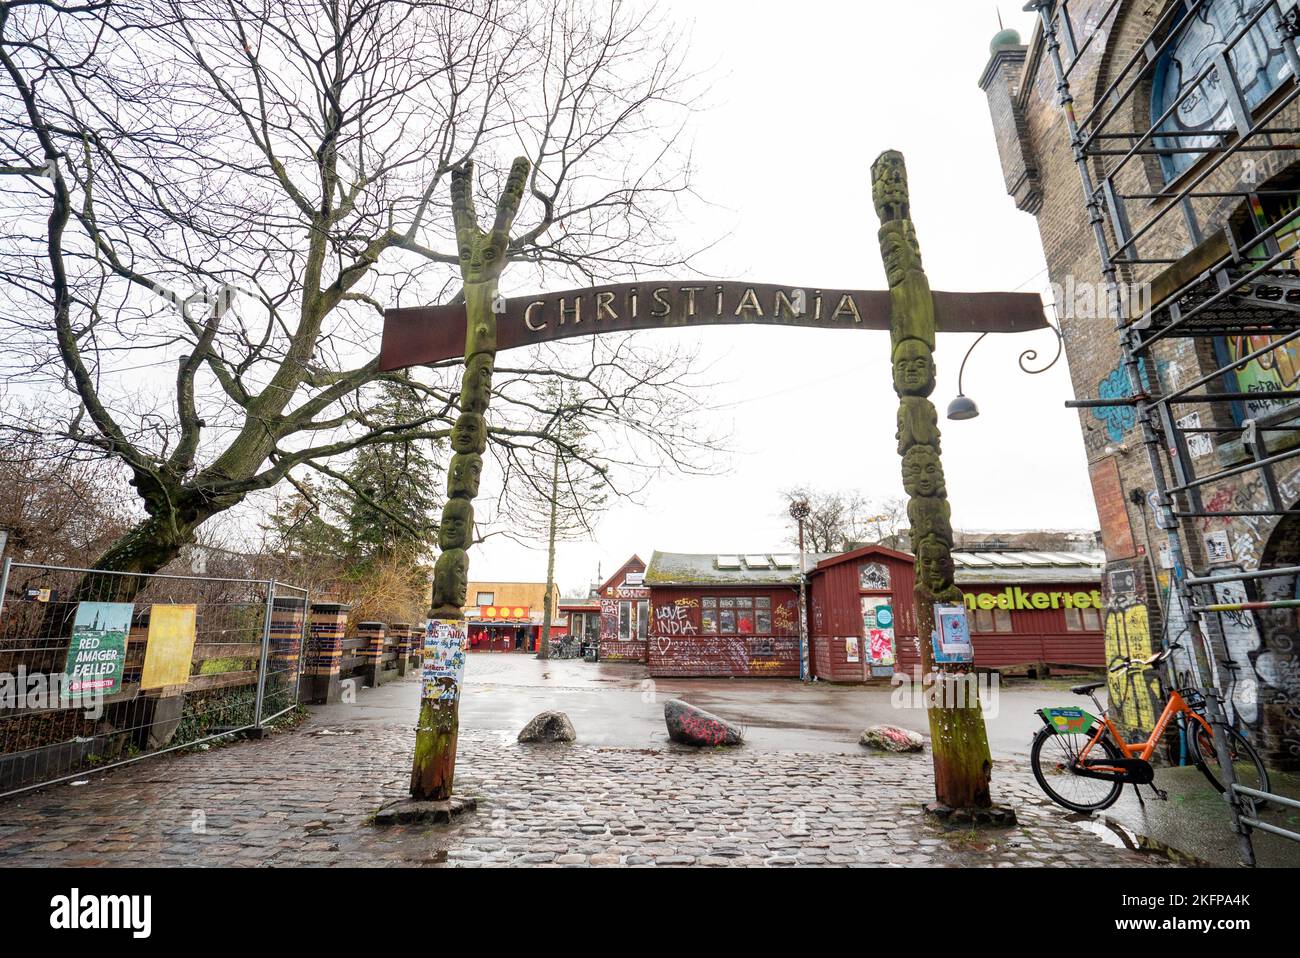 Der Eingang nach Christiania freetown, Kopenhagen, Dänemark. Freetown Christiania- eine absichtliche Gemeinschaft, Kommune und Mikronation in Christianshavn. Stockfoto